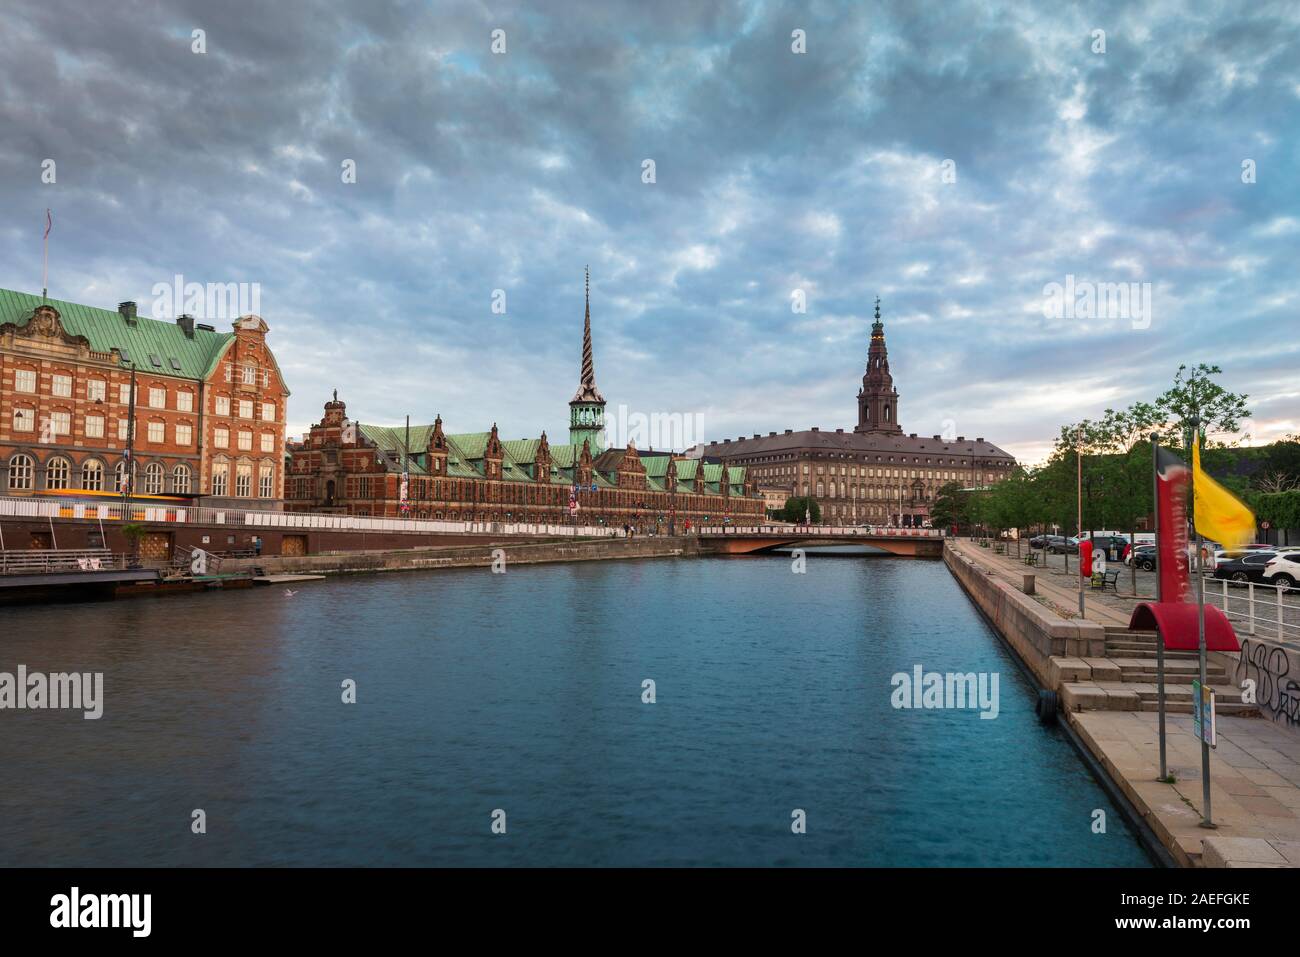 Ciudad de Copenhague, vista al atardecer del canal Slotsholmen con la bolsa de Borse y la ranura Christianborg (palacio) visible en la distancia, Copenhague Foto de stock